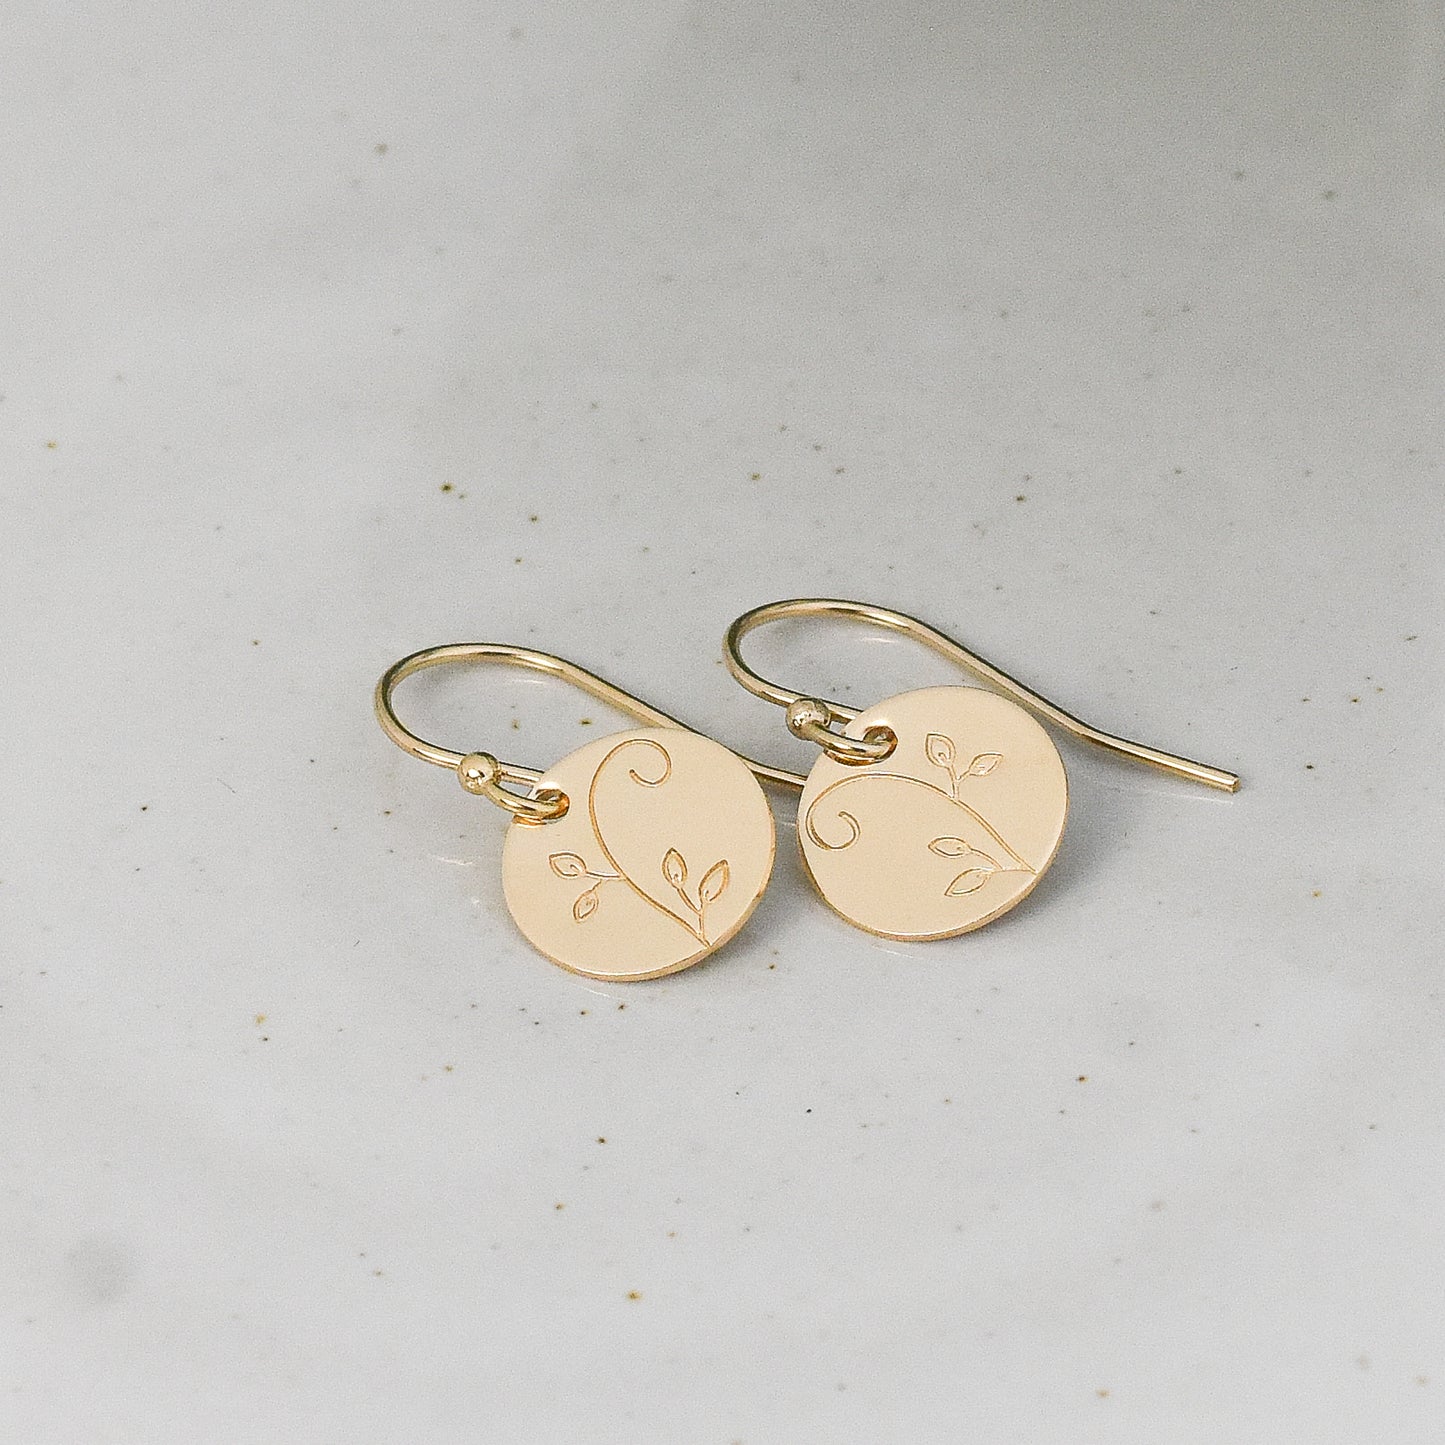 Swirly Vine Earrings - Gold or Silver